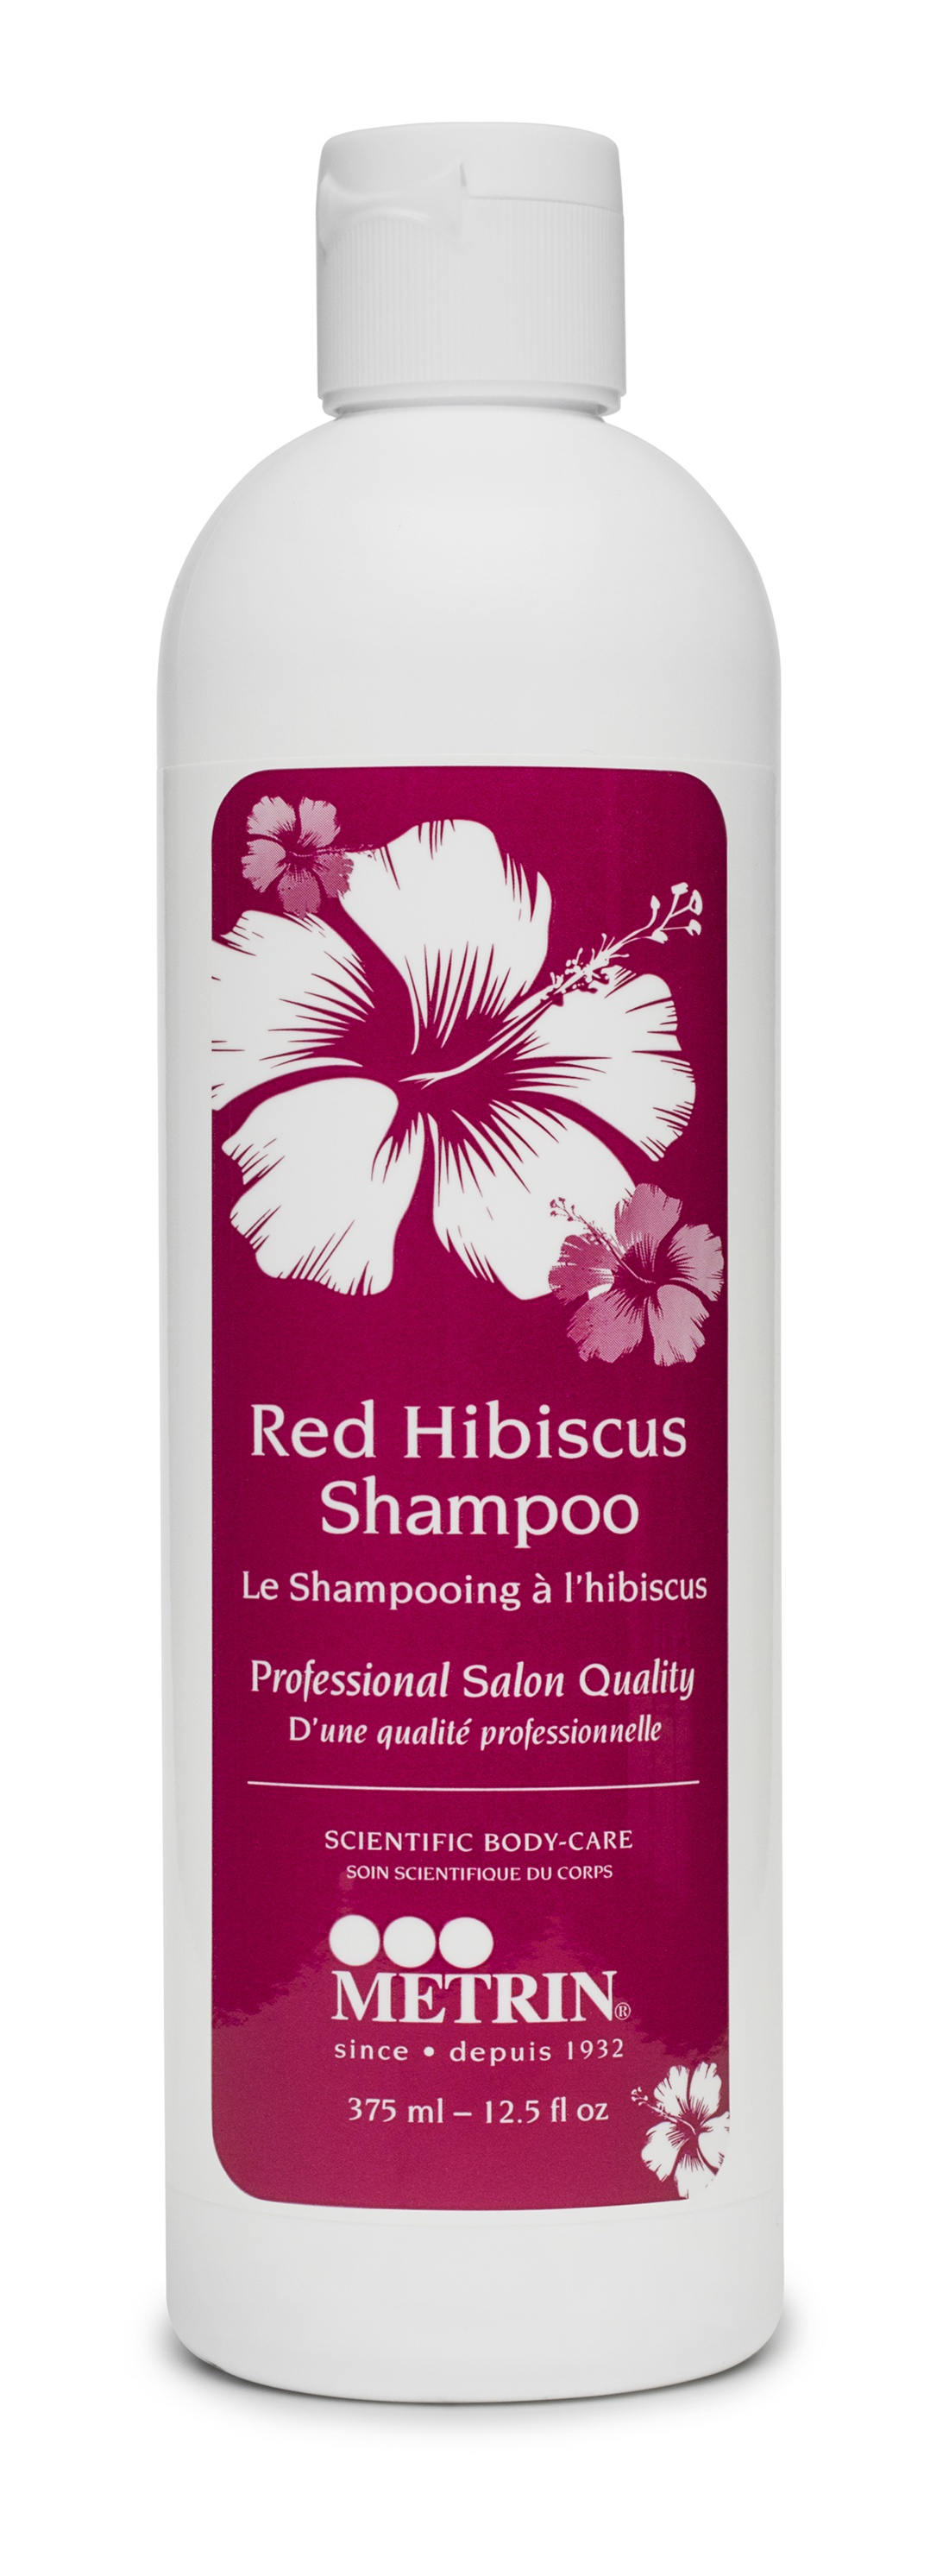 Metrin Red Hibiscus Shampoo